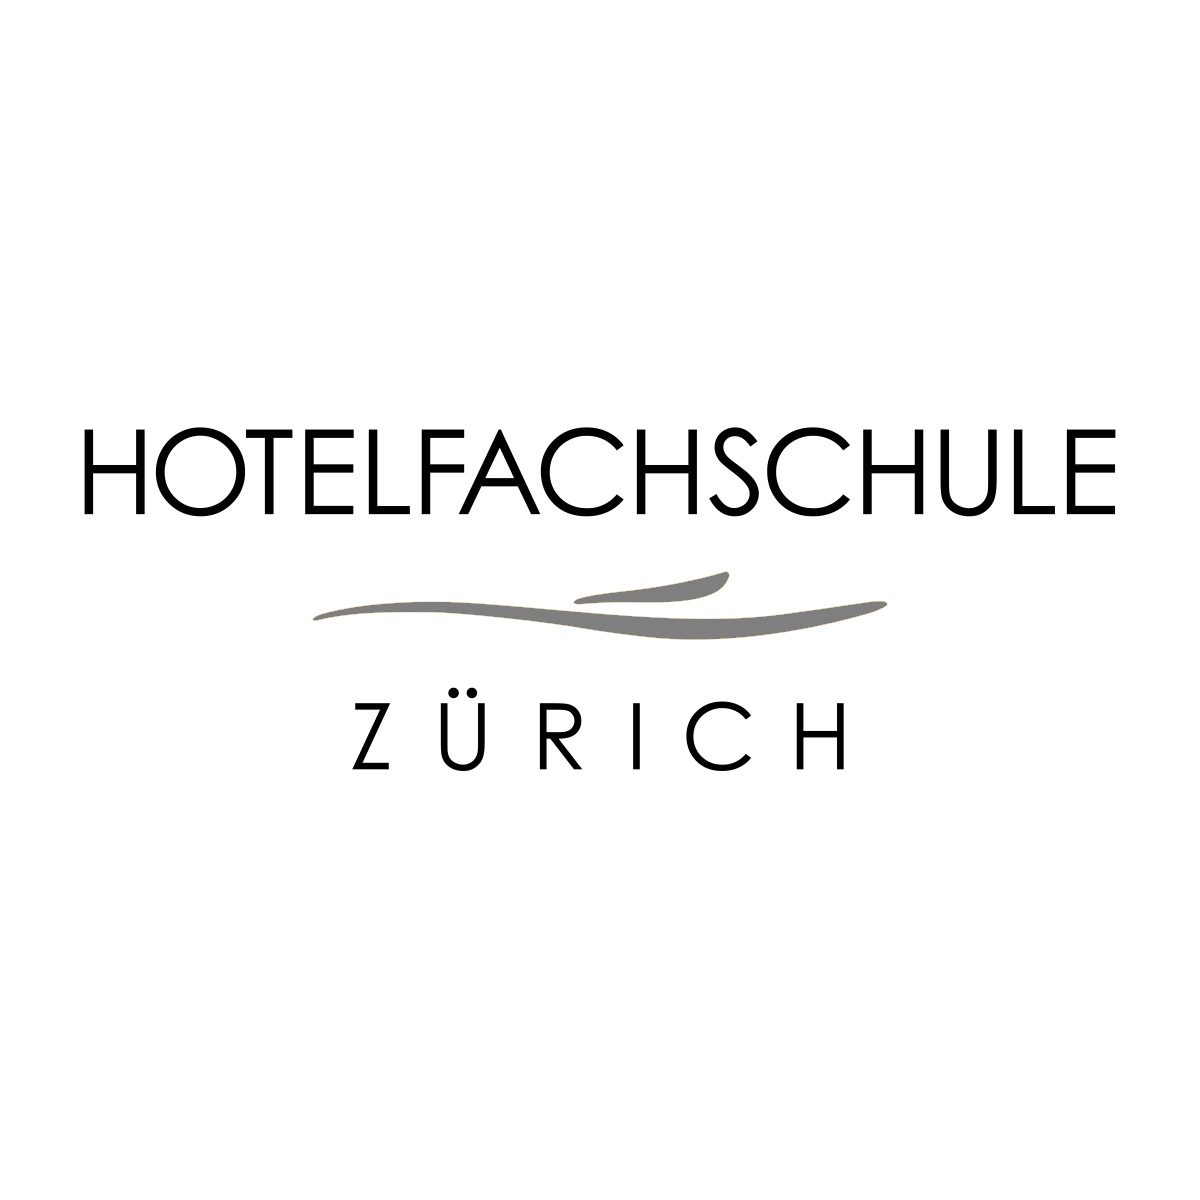 Hotelfachschule Zürich